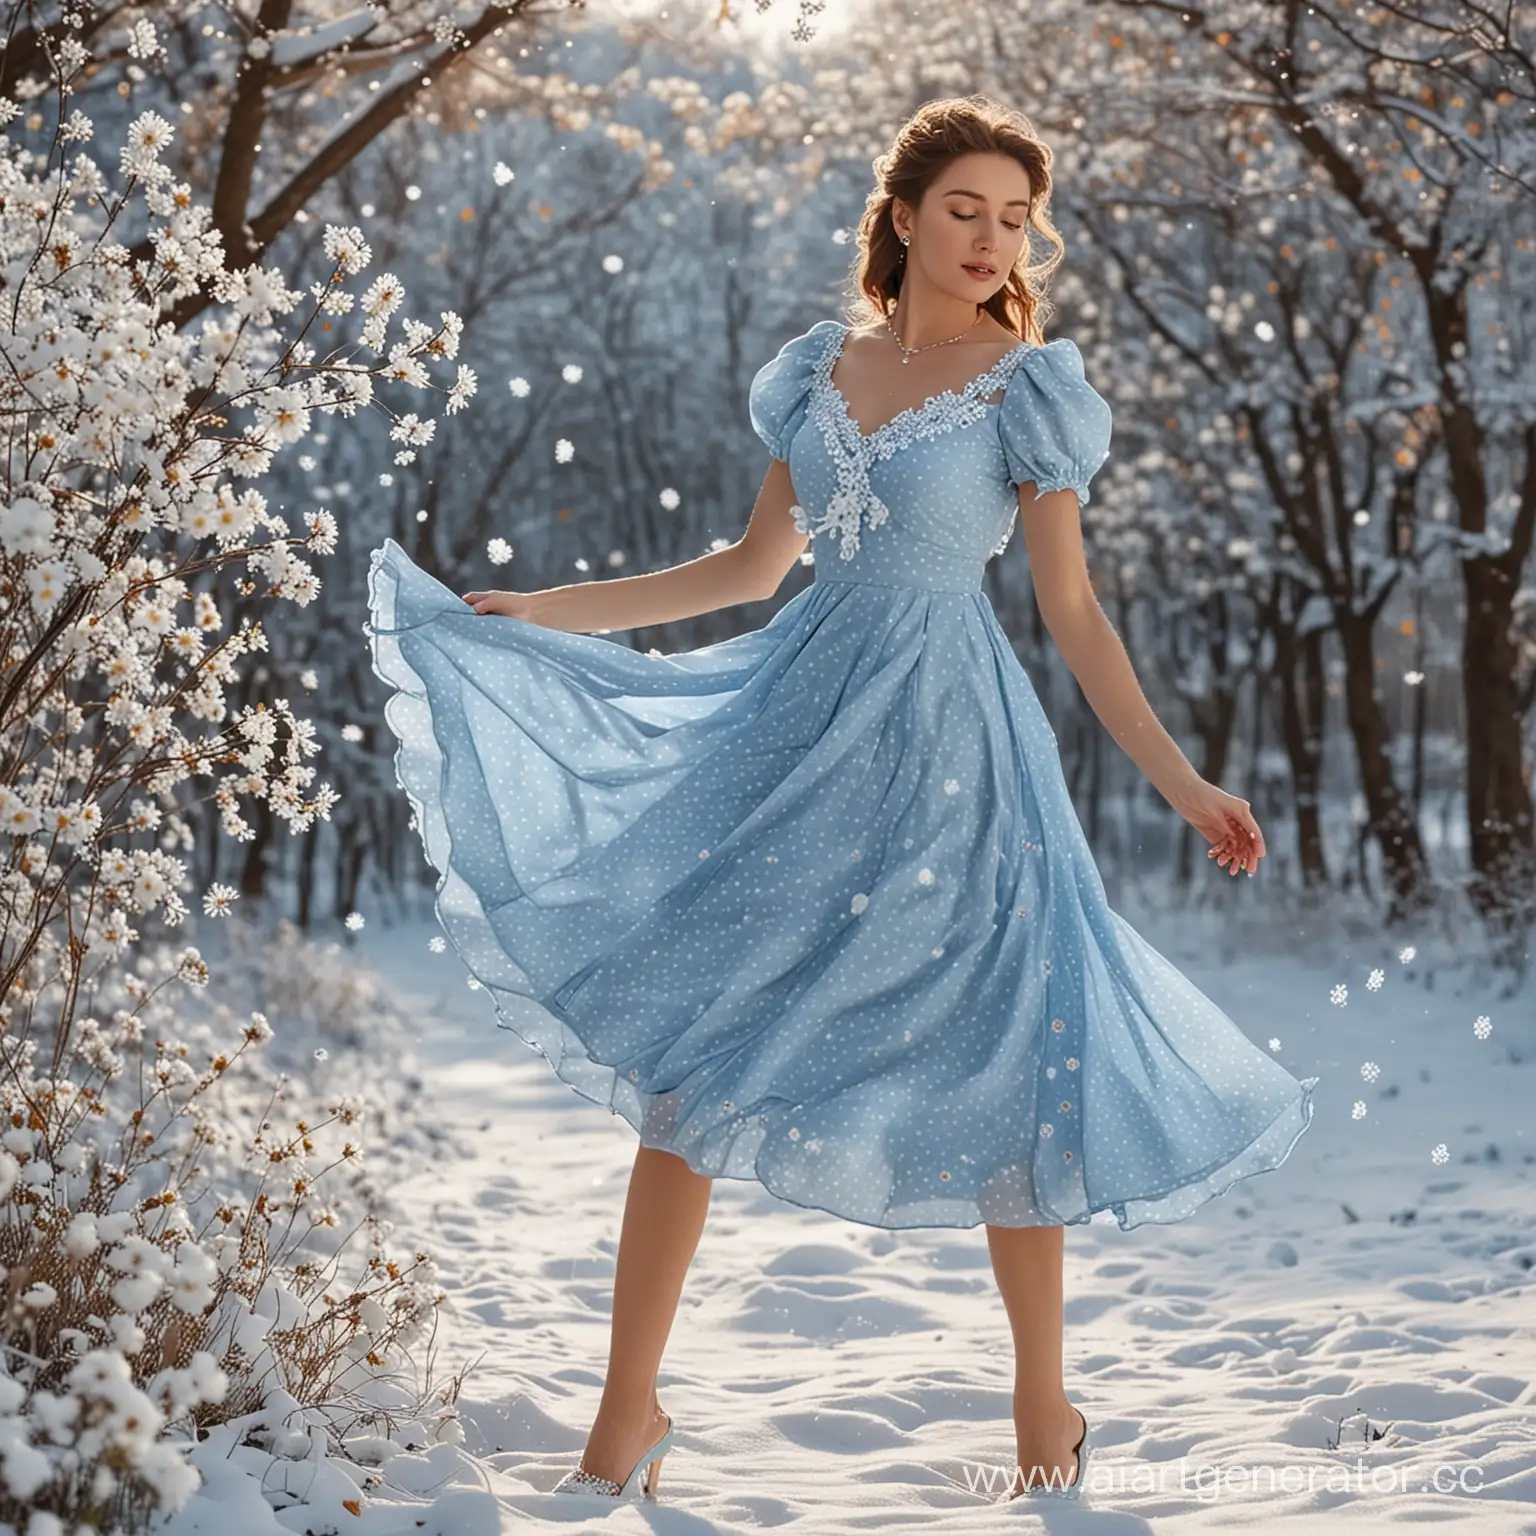 Алинка-красавица в потрясающем голубом платье в белый горошек в бальном танце вокруг снежинки и разноцветные цветы